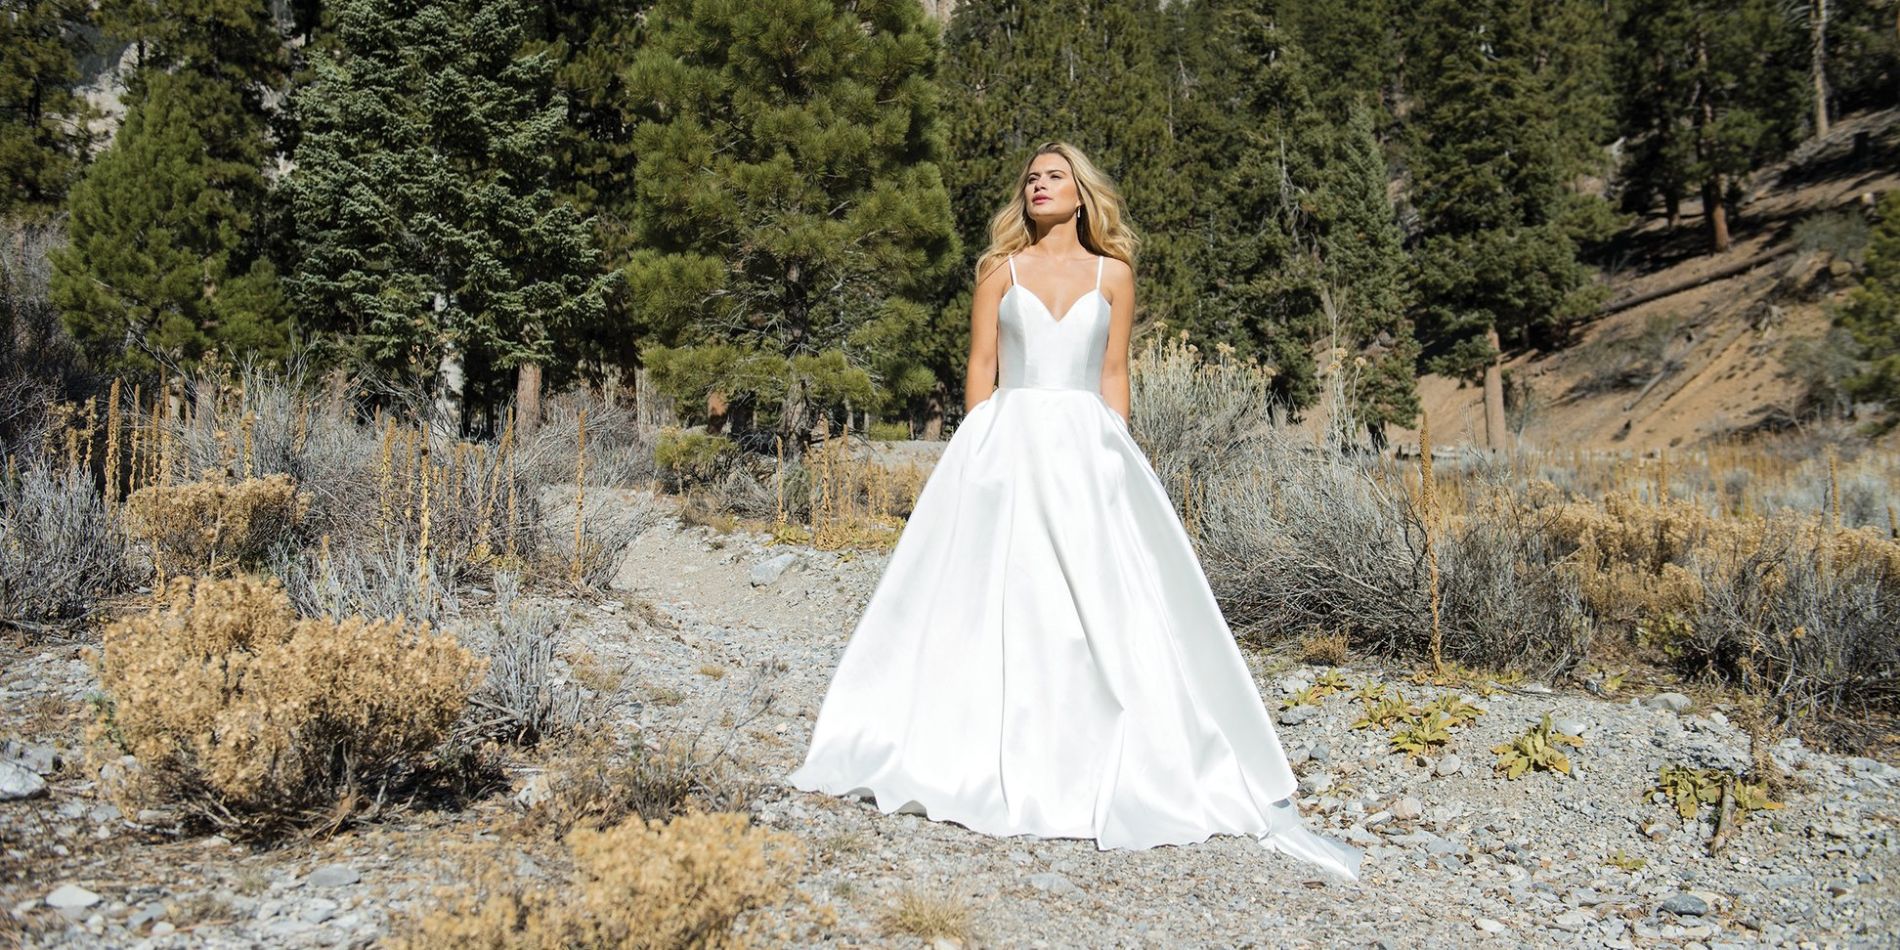 Woman modelling wedding dress in rocky landscape